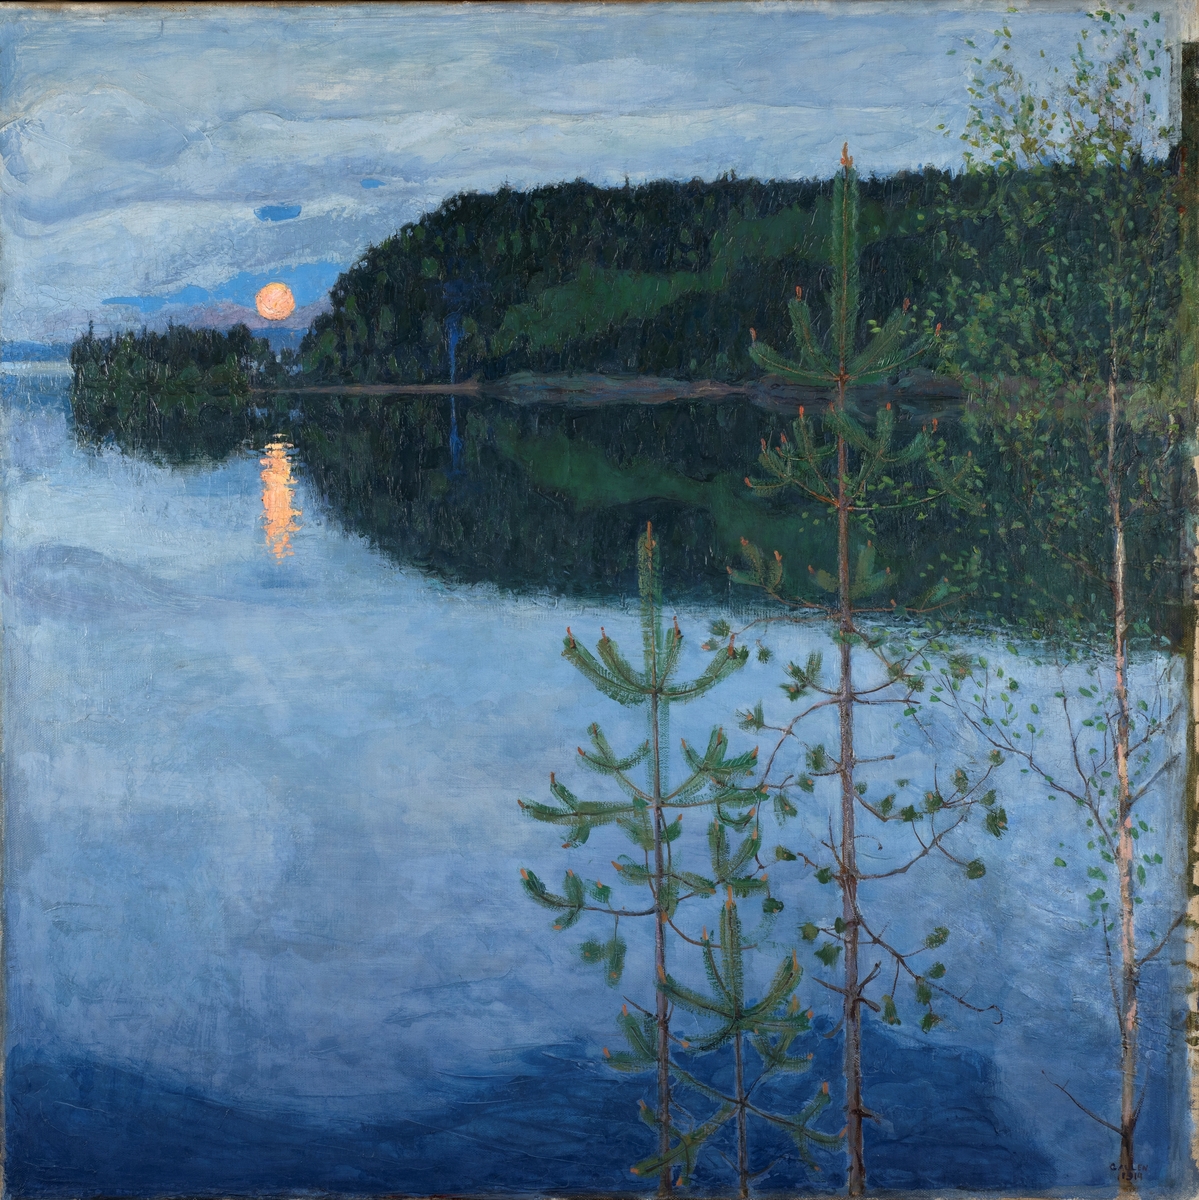 Et vann med trær i forgrunnen og vannlinjen i øvre del av maleriet. Skogen og månelys speiler seg i vannet.